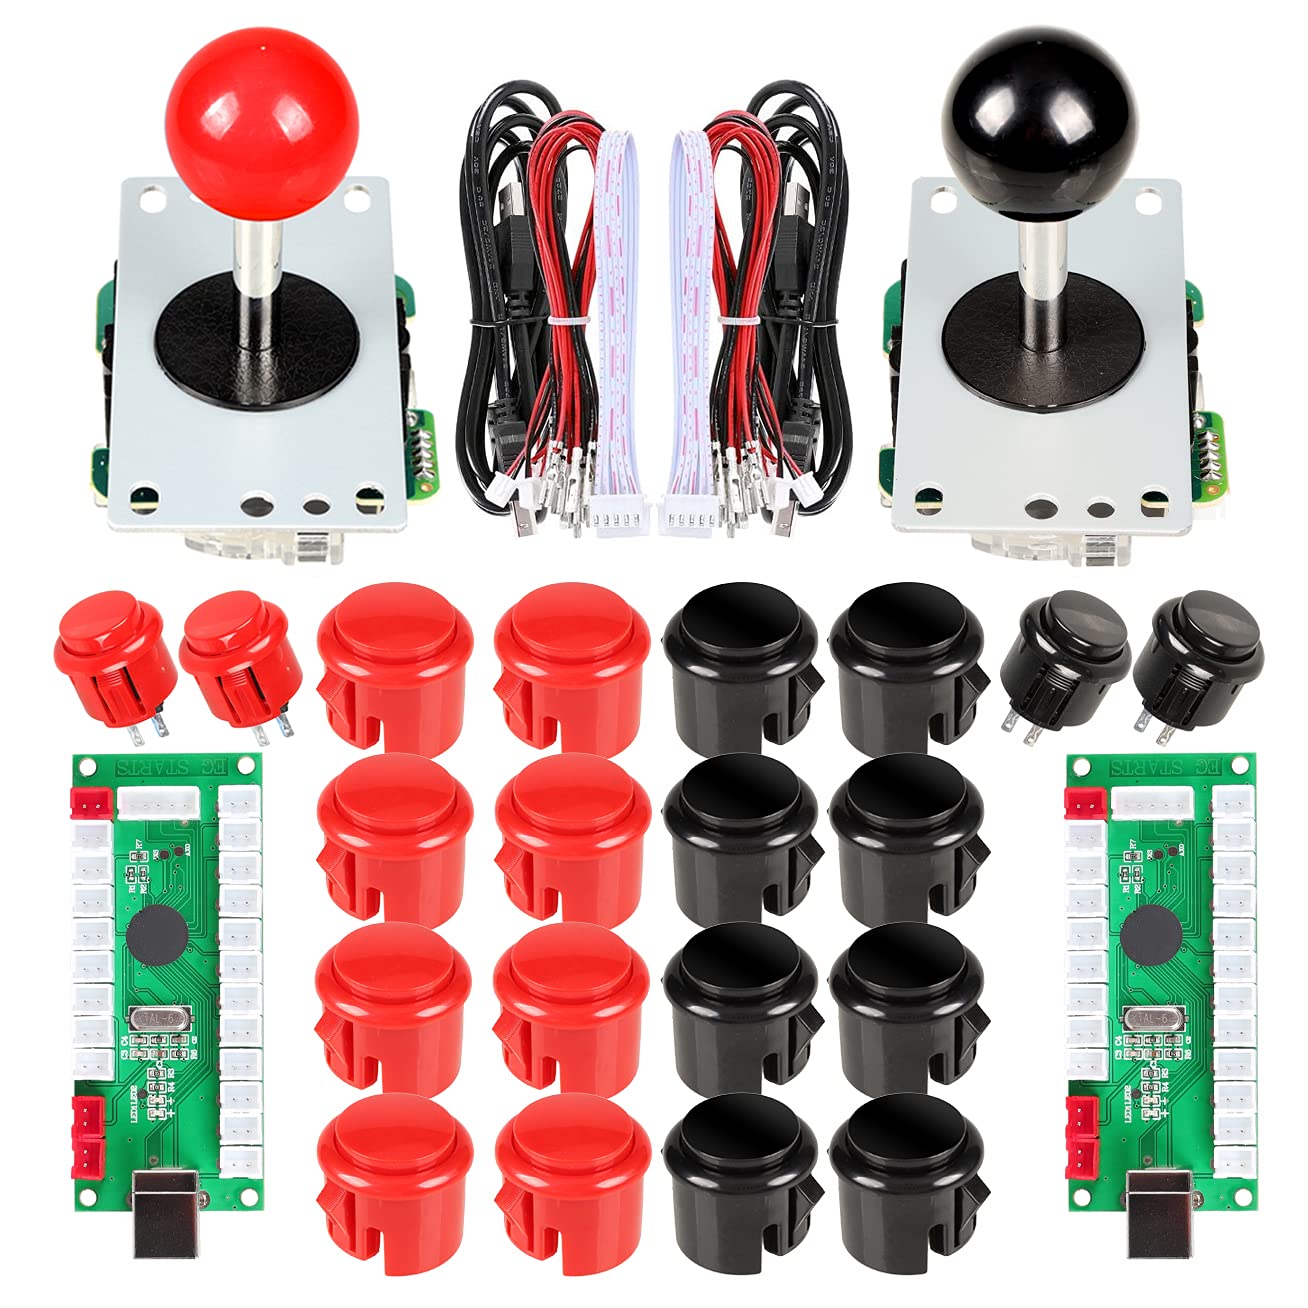 EG STARTS 2 Spieler Arcade Spiel Kit Teil USB Pc Joystick für Mame Spiel DIY Null Verzögerung USB Encoder + 2x 5pin 8 Way Stick + 20 Drucktasten Rot + Schwarz Kits Support Windows & Raspberry Pi